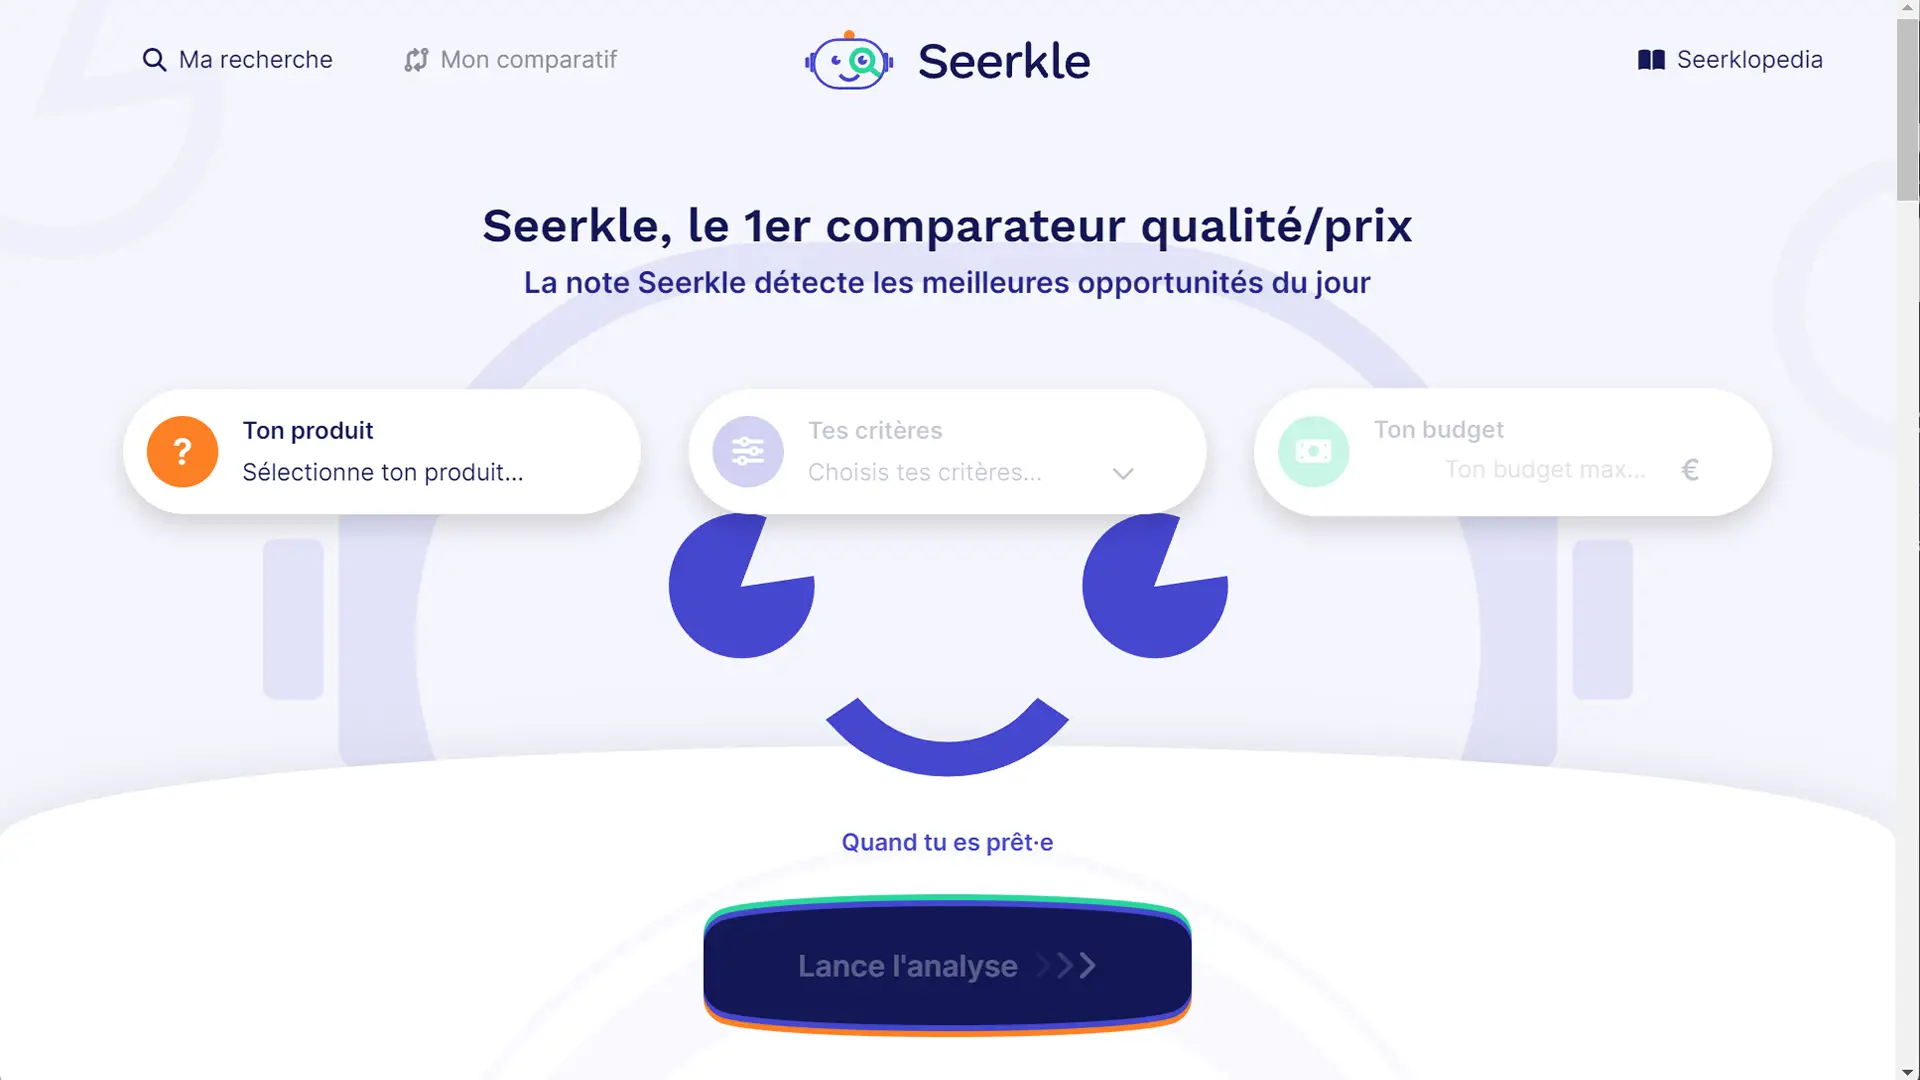 Seerkle, le 1er comparateur qualité/prix